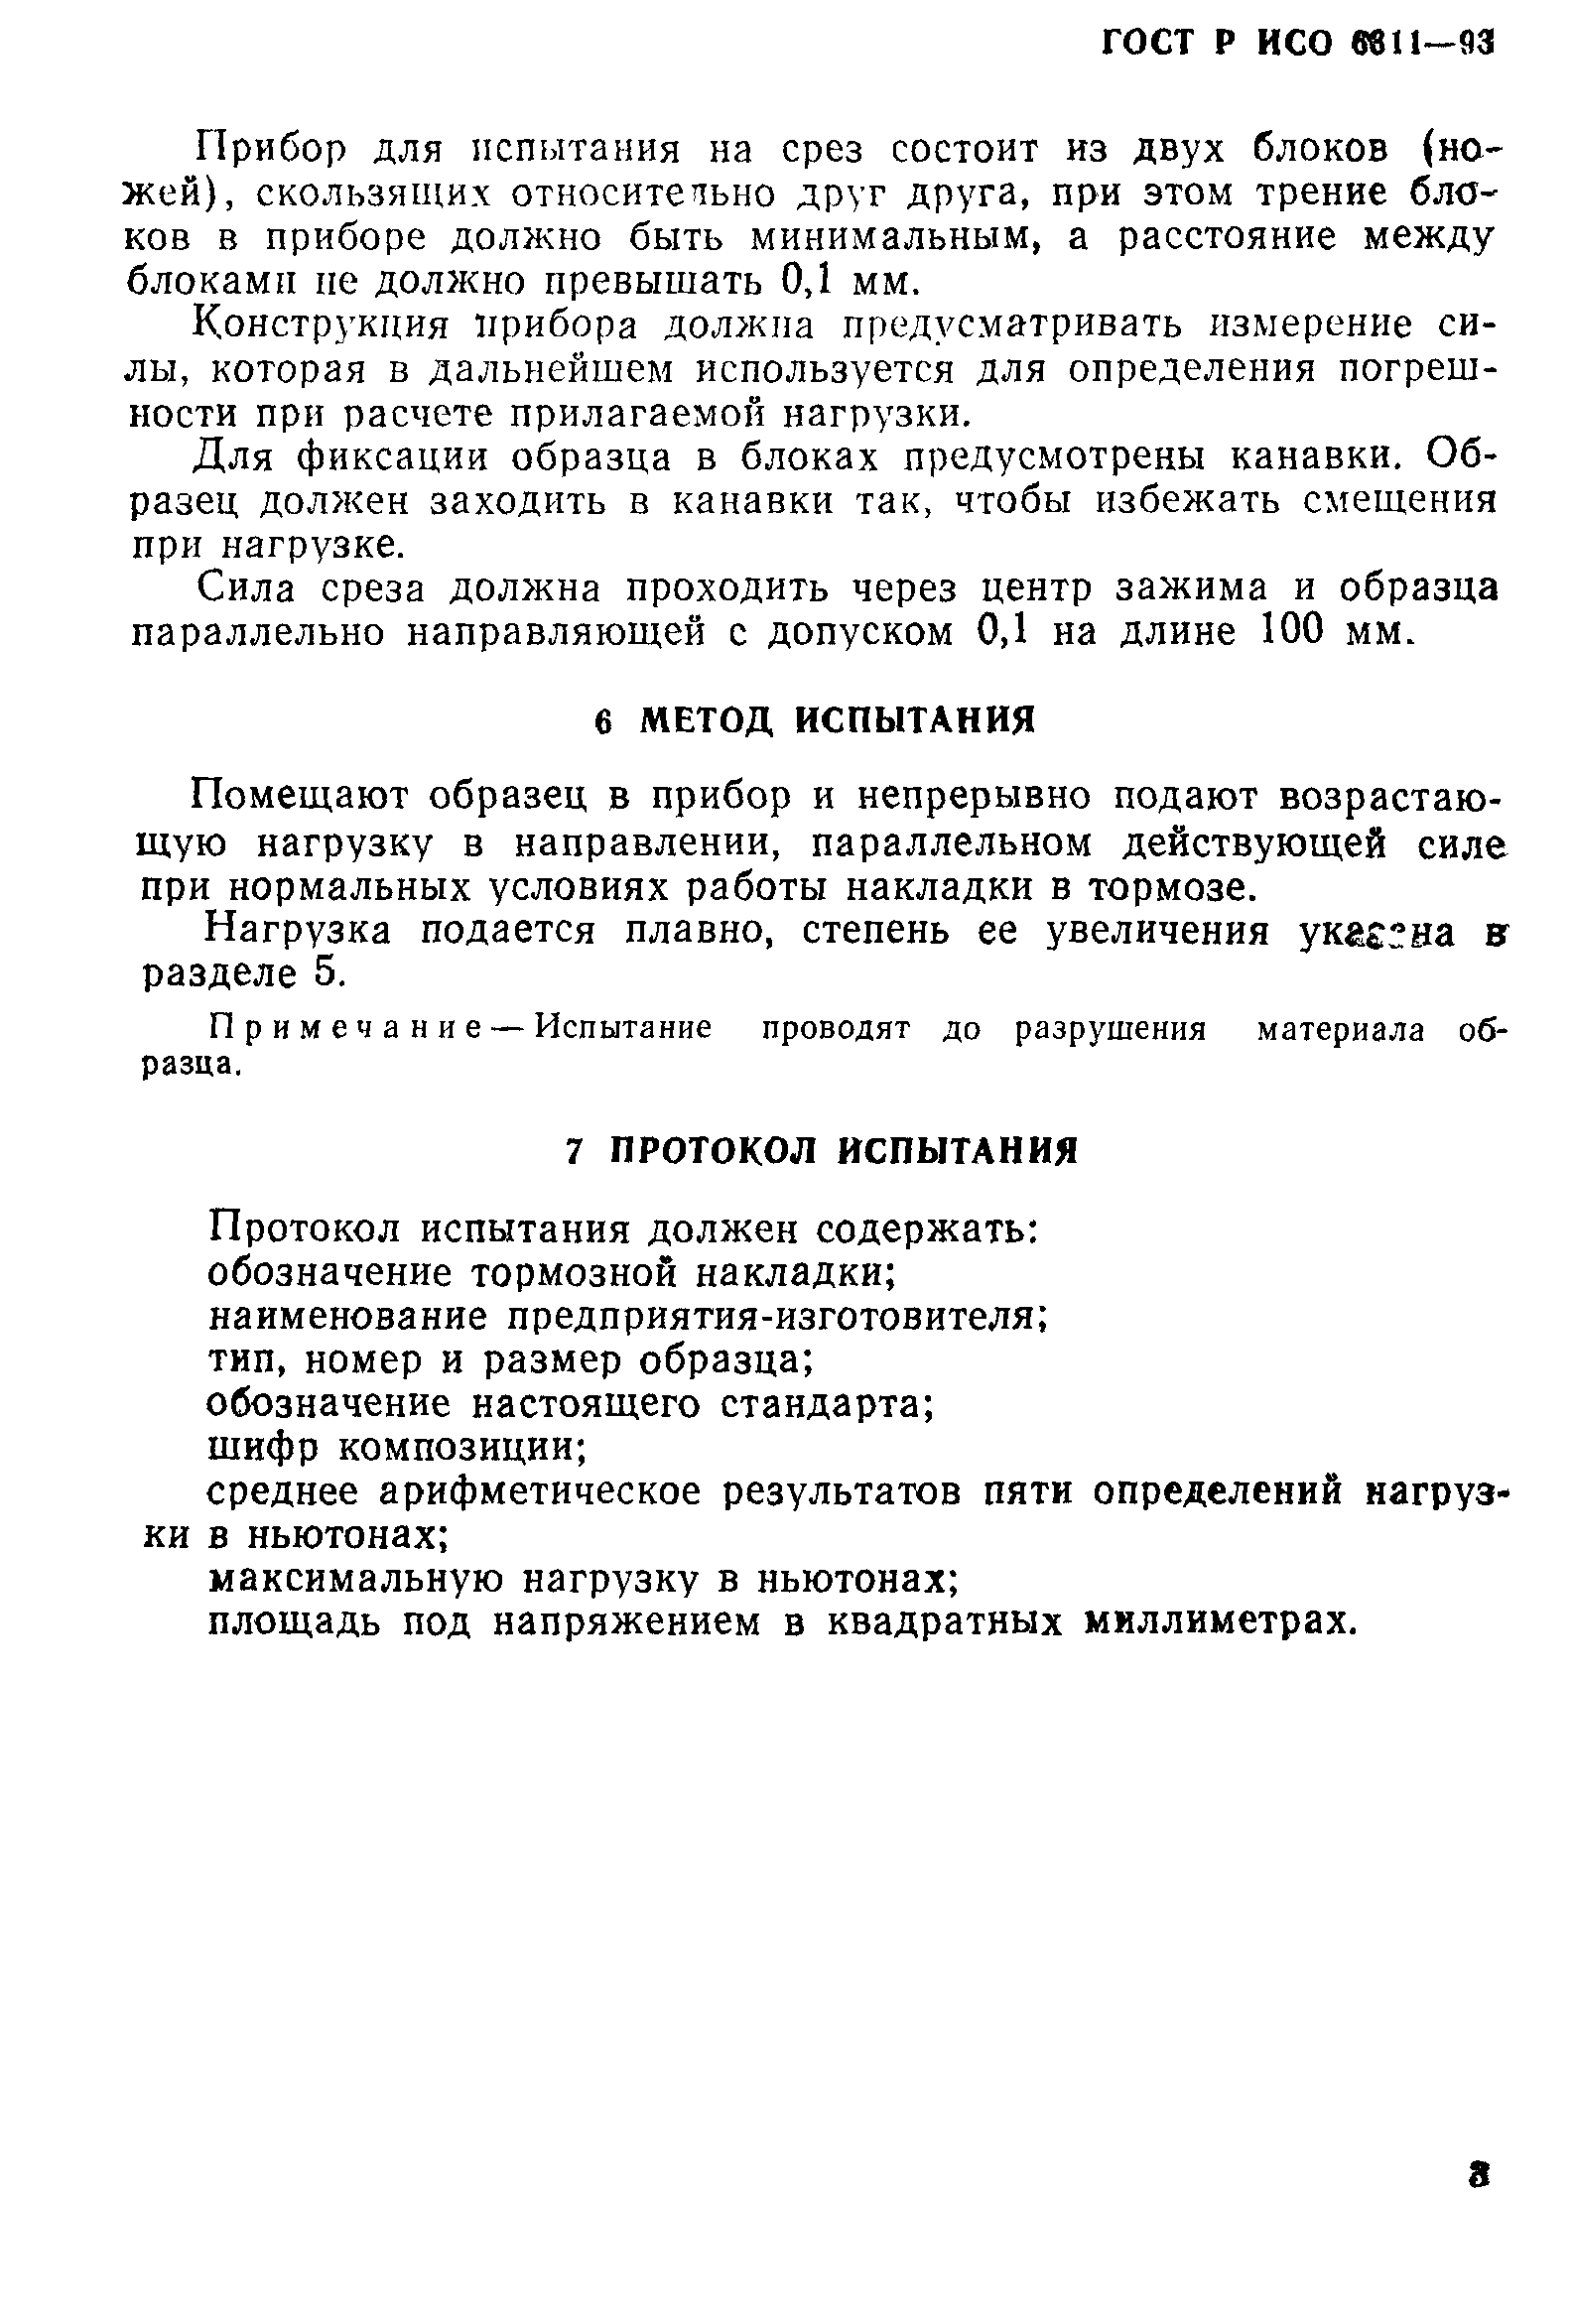 ГОСТ Р ИСО 6311-93